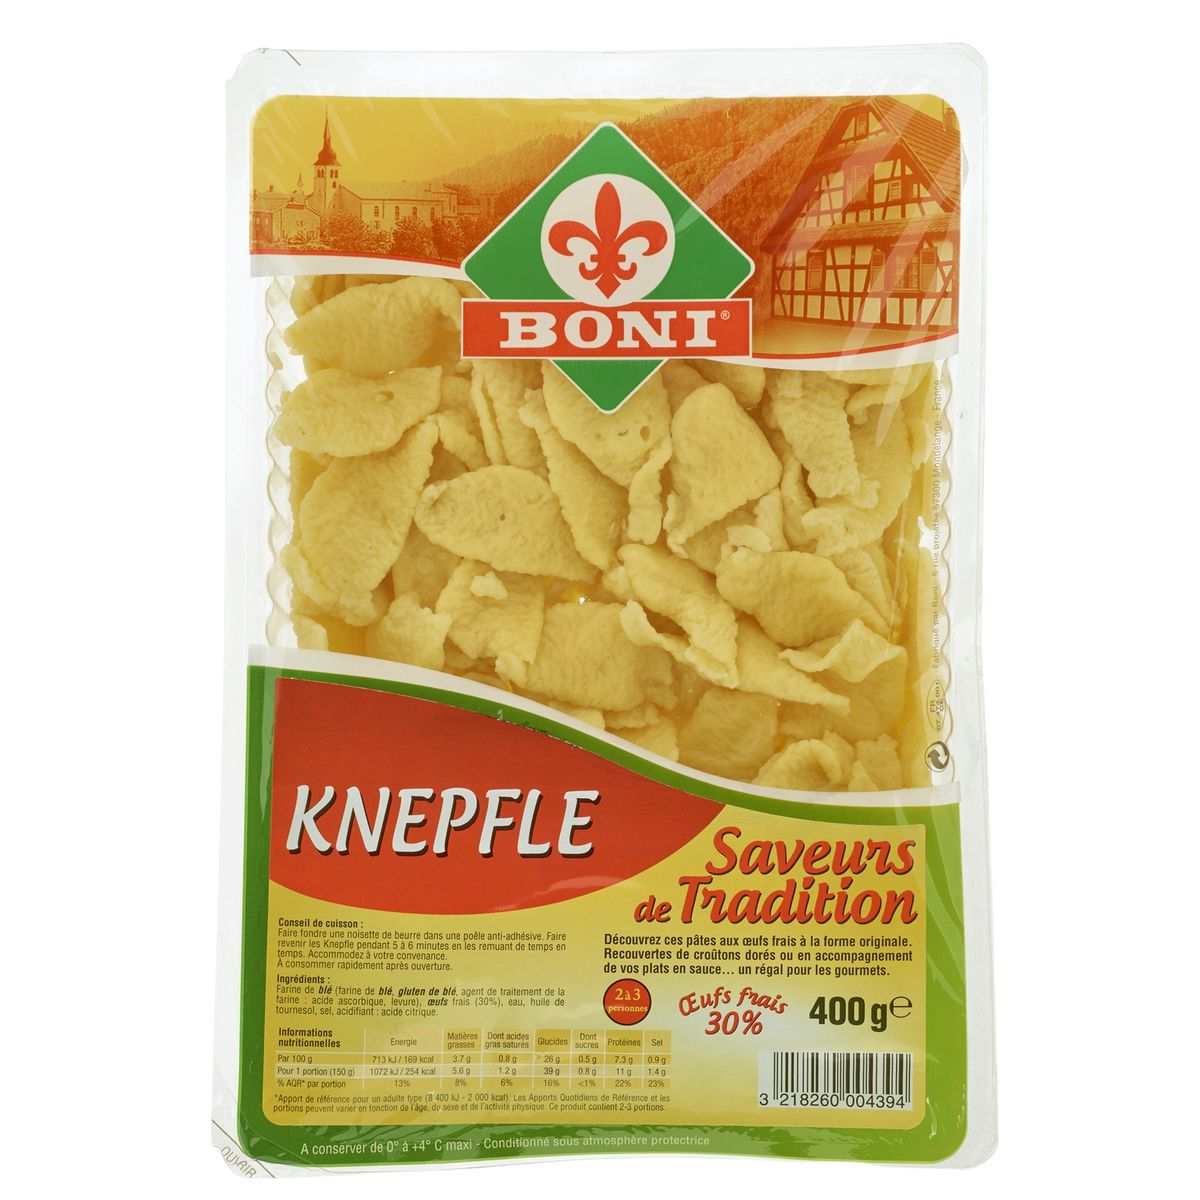 BONI Knepfle 2-3 portions 400g